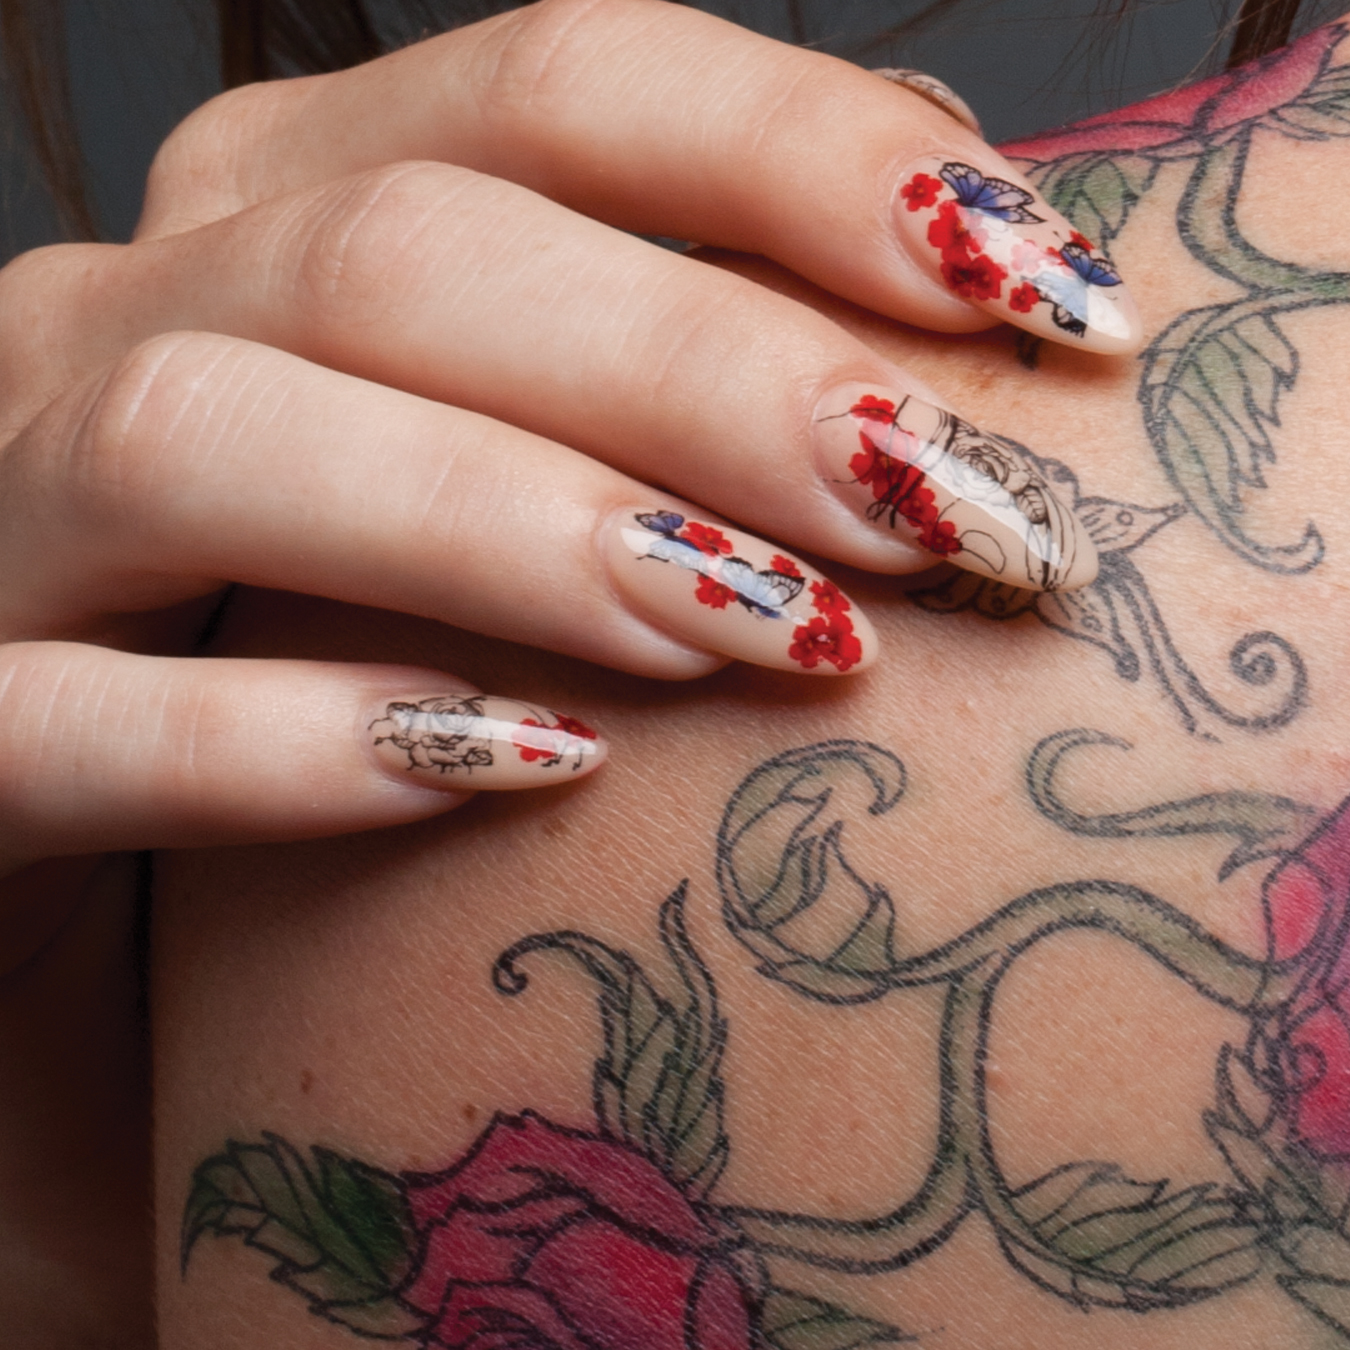 680+ Free Download Tattoo Nail Inspiration HD Tattoo